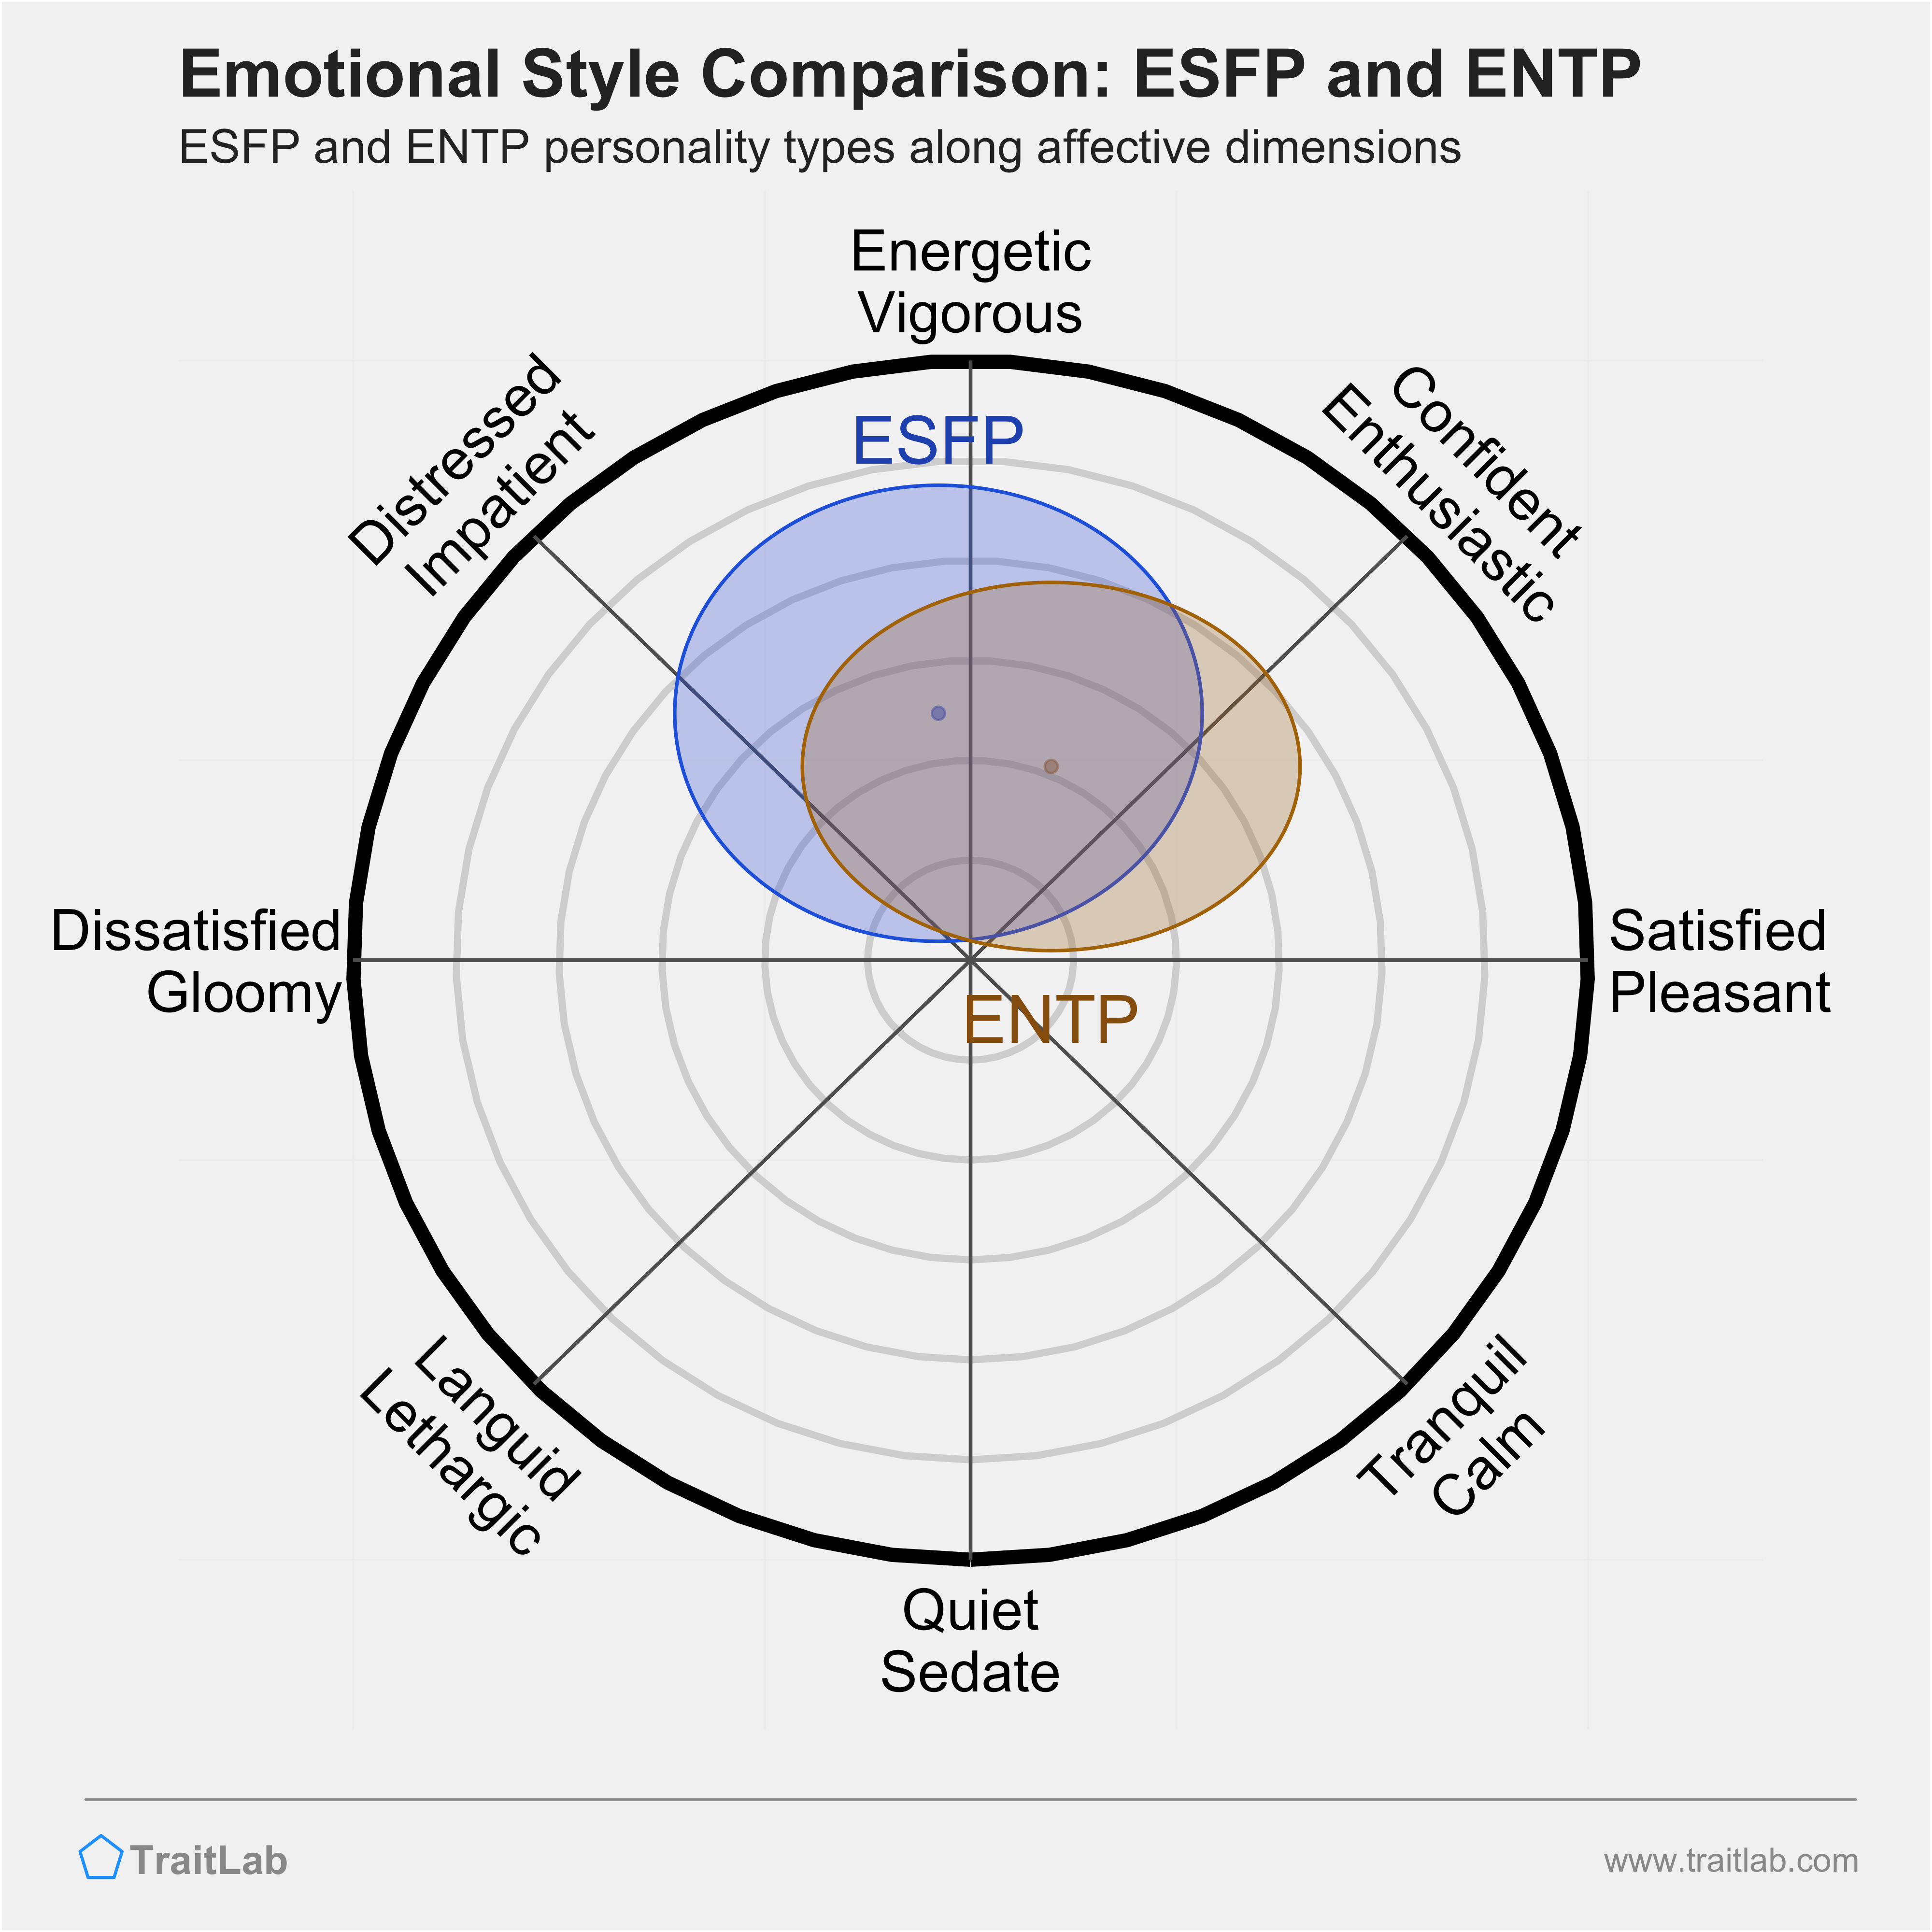 ESFP and ENTP comparison across emotional (affective) dimensions